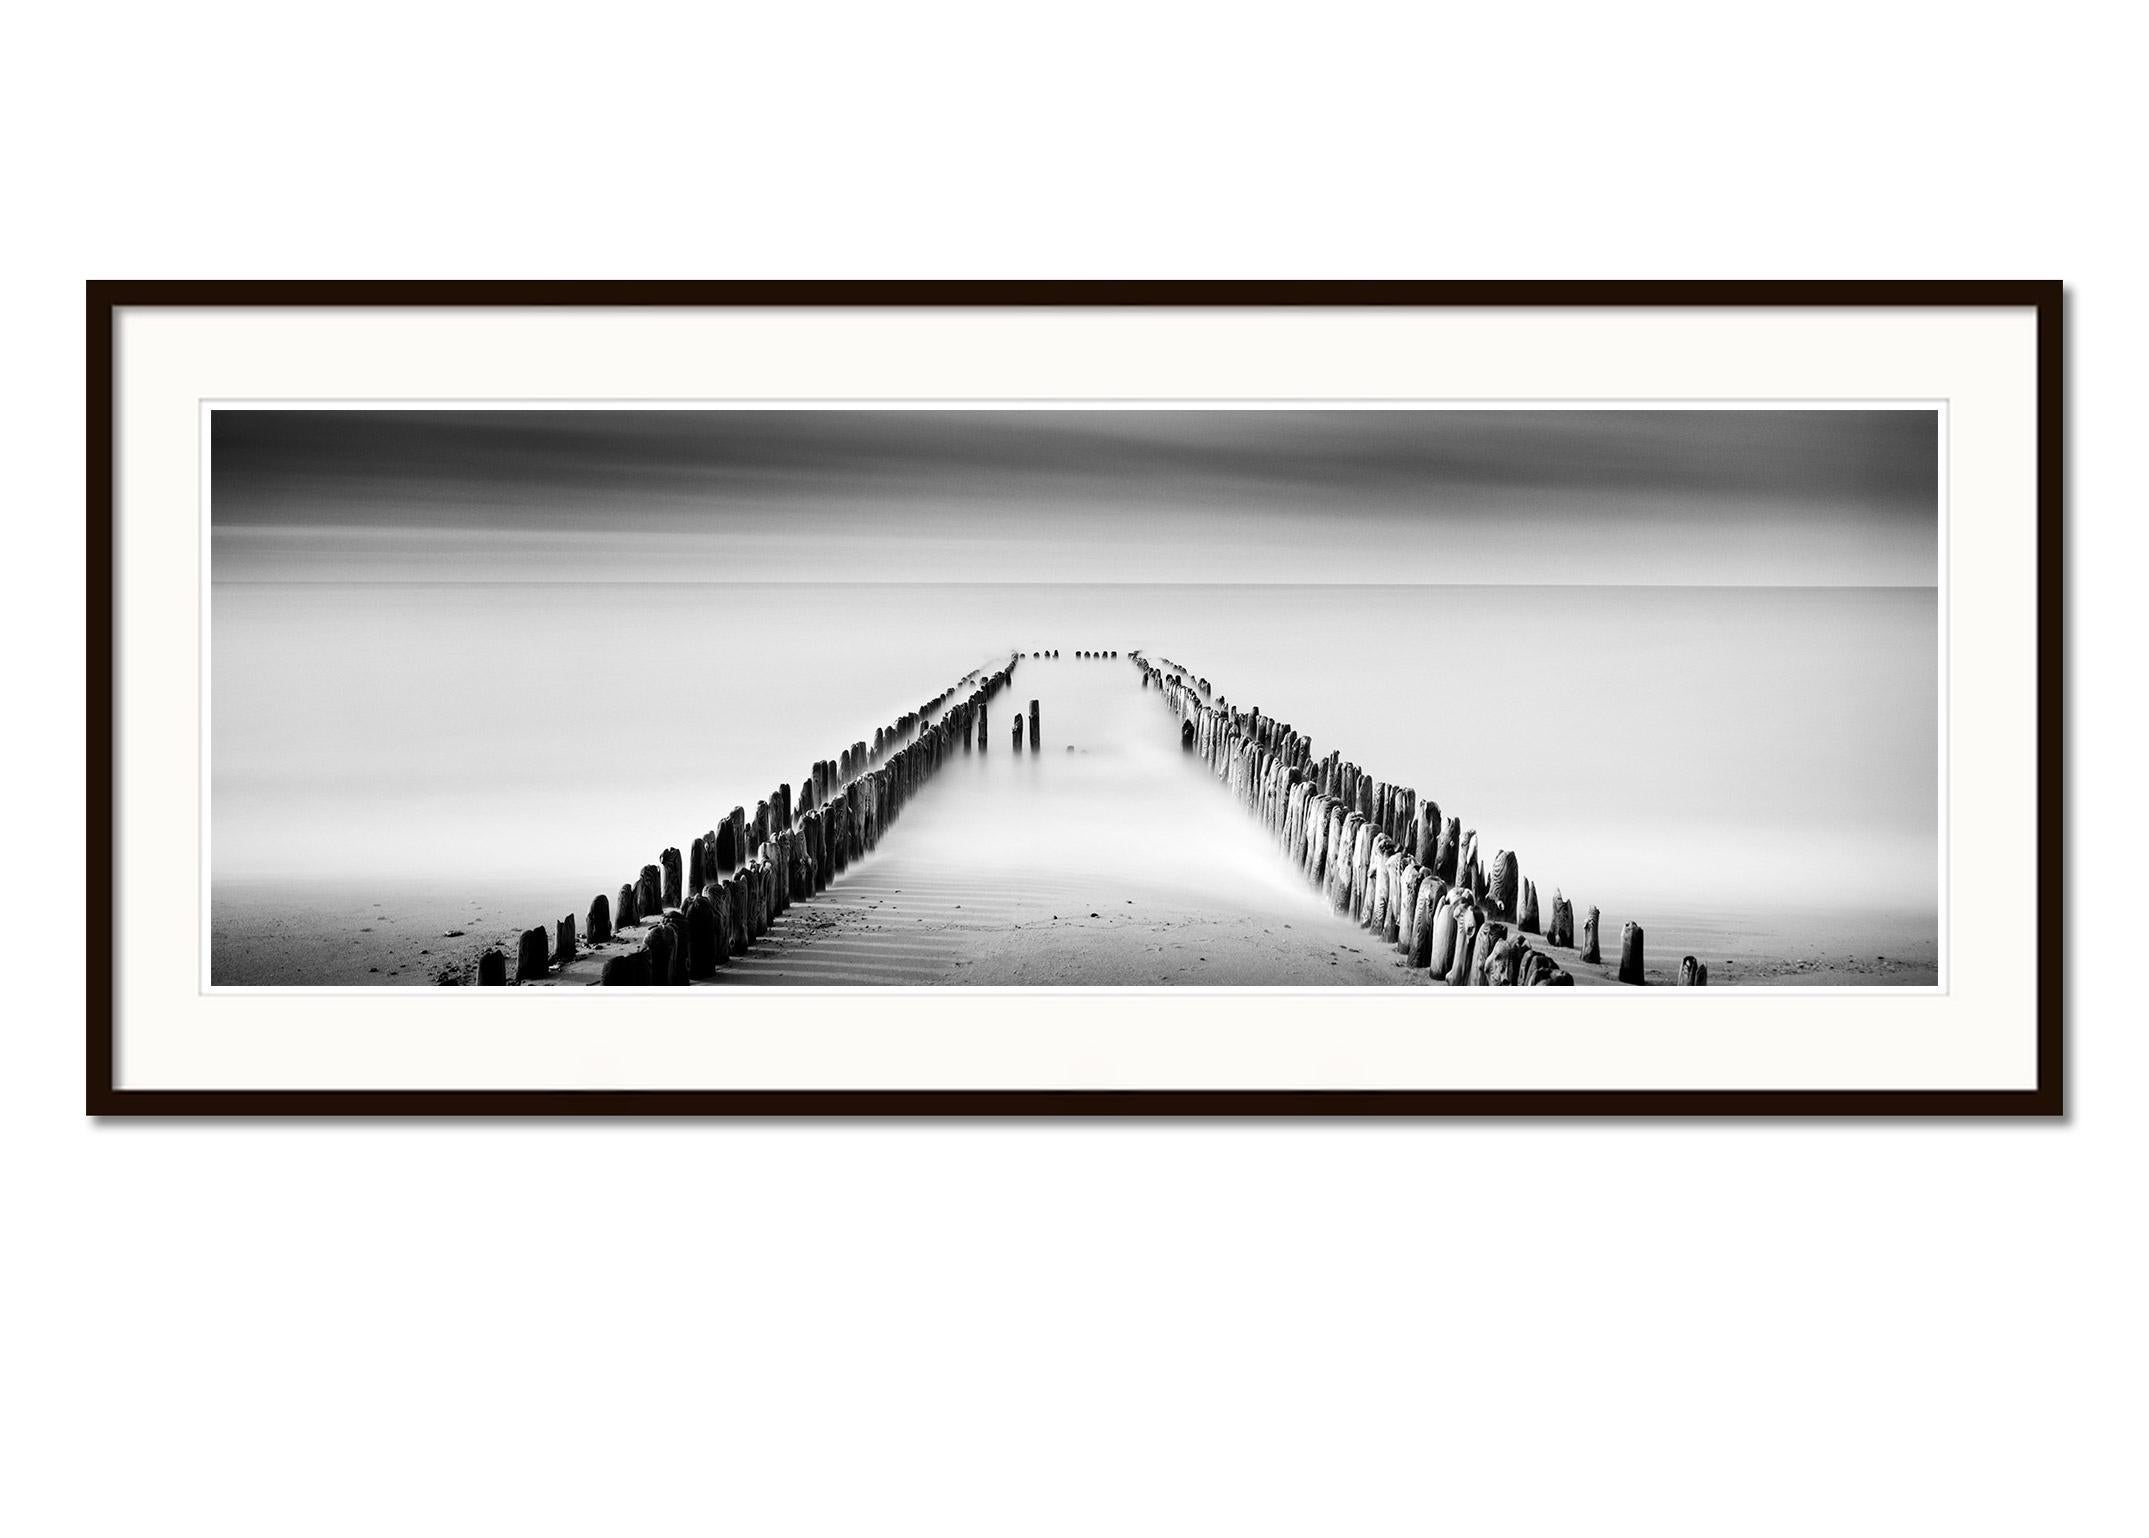 Four Lines, Wellenbrecher, Schwarz-Weiß-Fotografie der bildenden Kunst Minimalismus (Grau), Black and White Photograph, von Gerald Berghammer